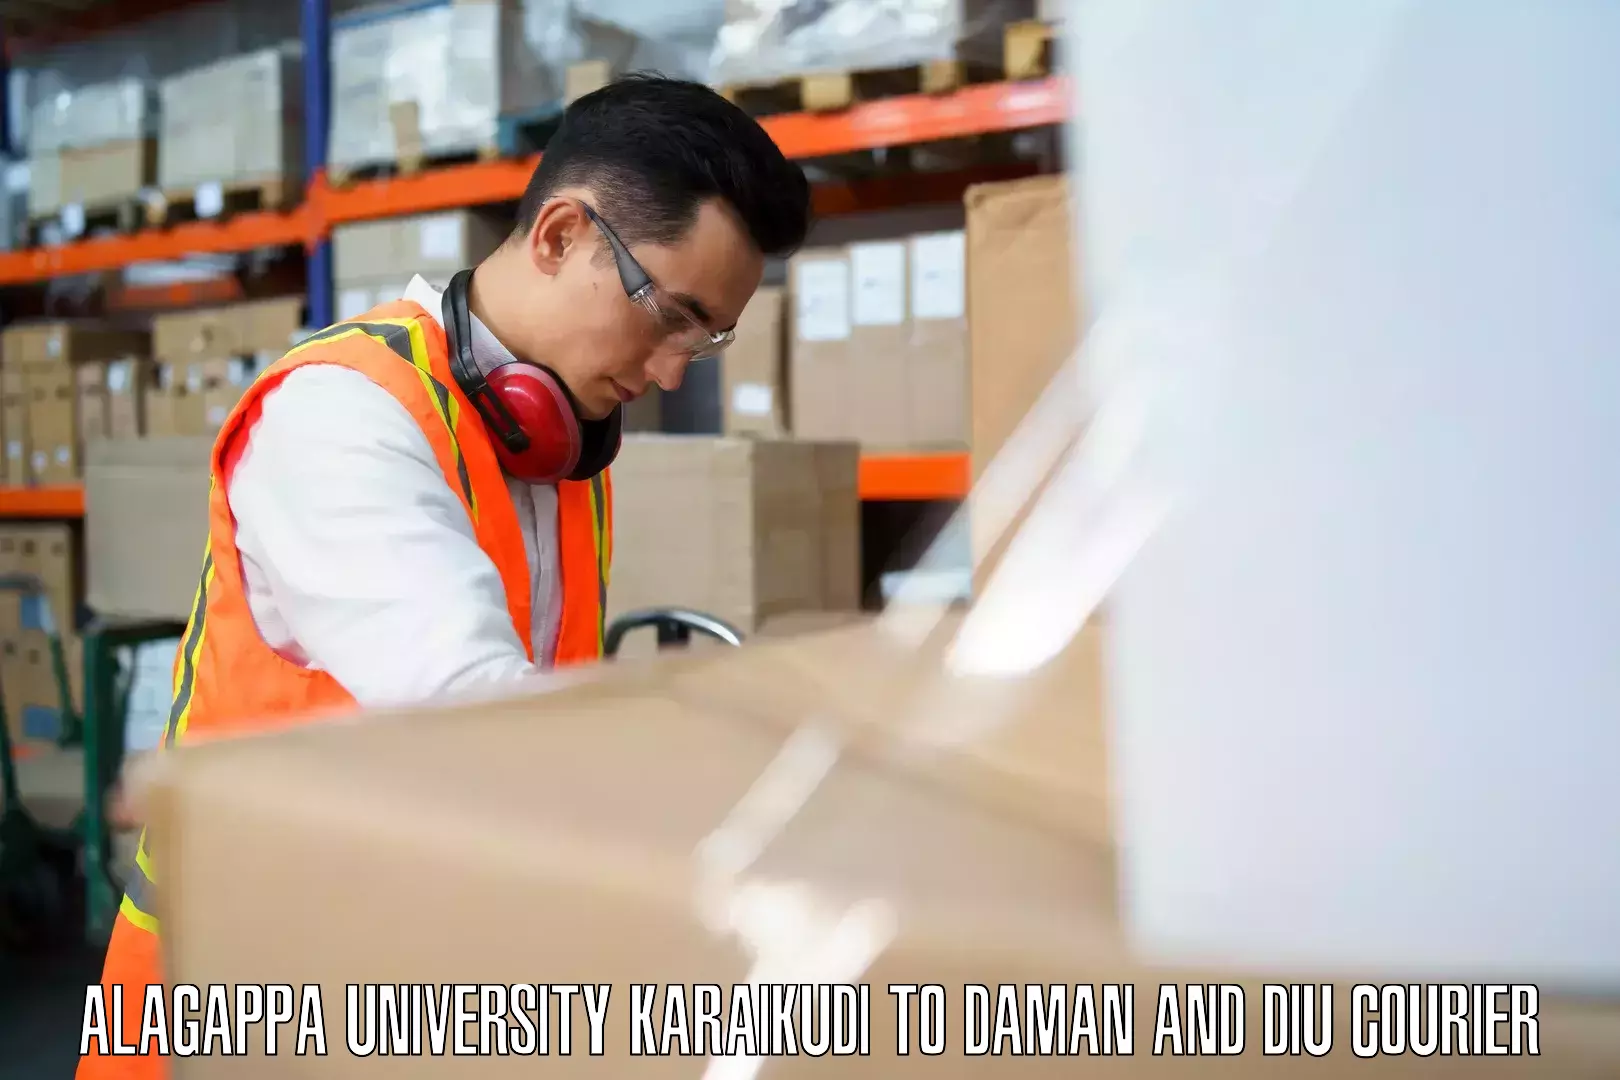 Hassle-free luggage shipping Alagappa University Karaikudi to Daman and Diu